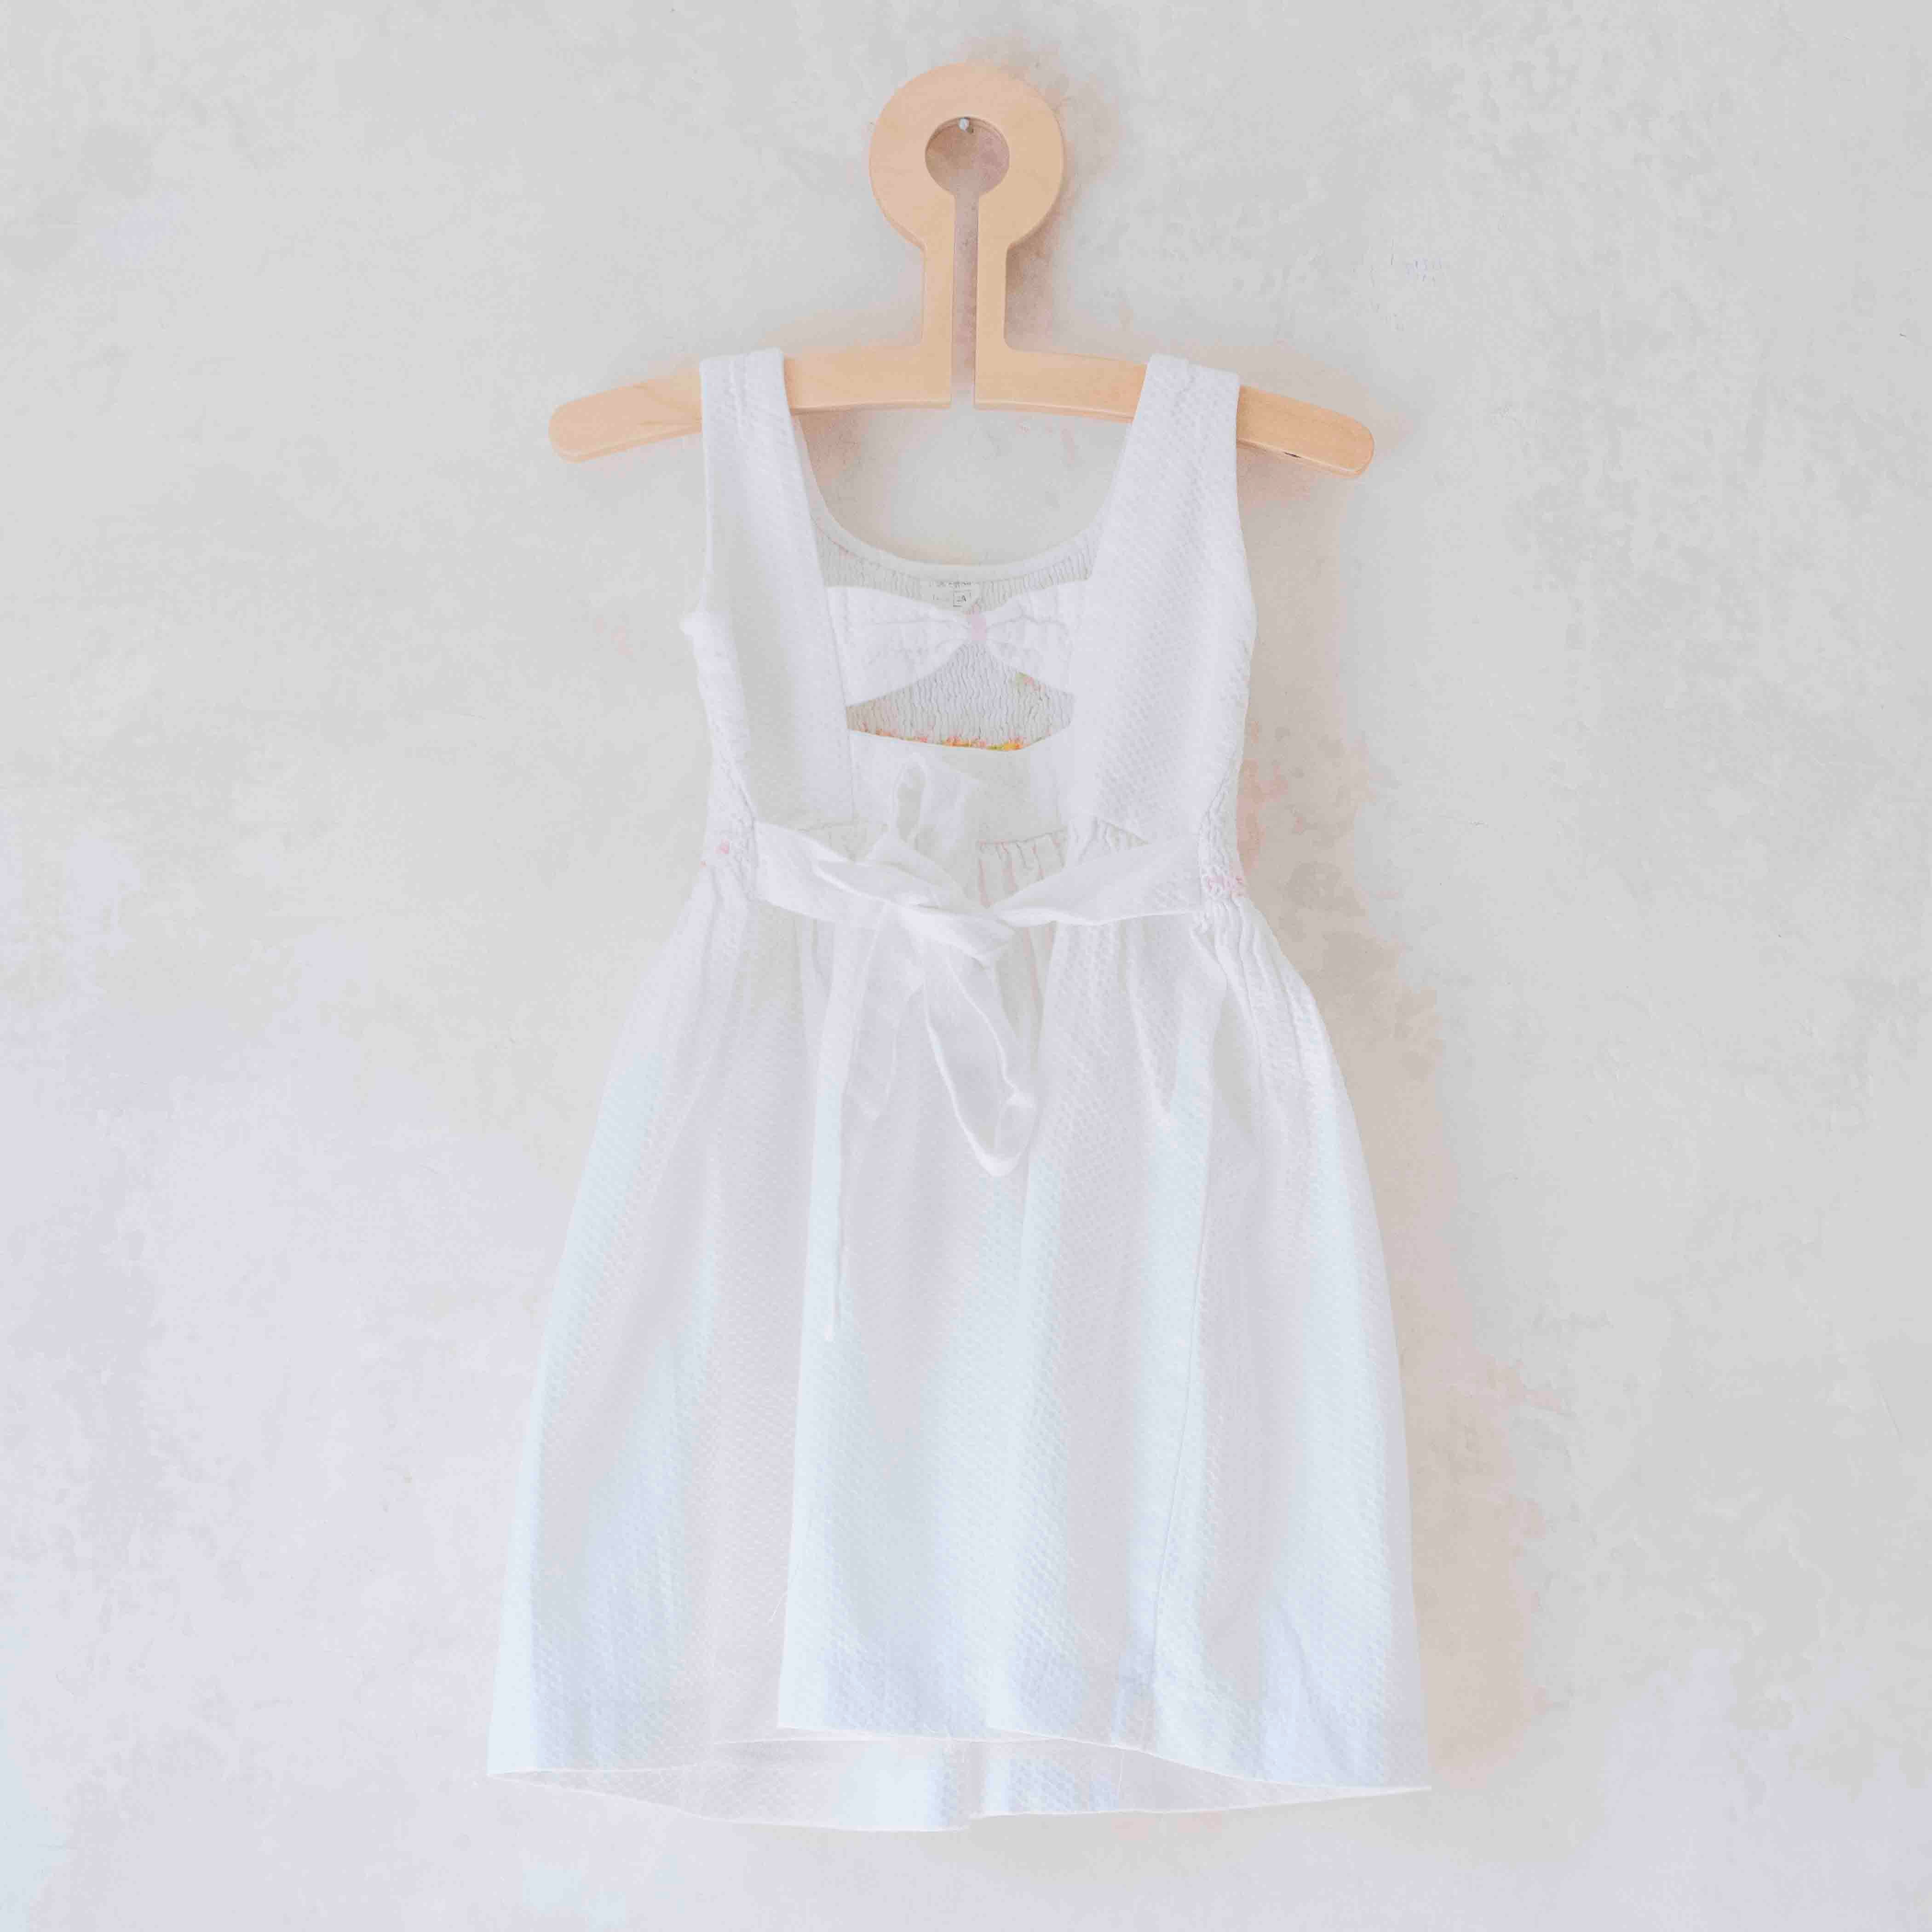 שמלה לבנה עם פרחים רקומים ואיקס בגב | 2-3 שנים